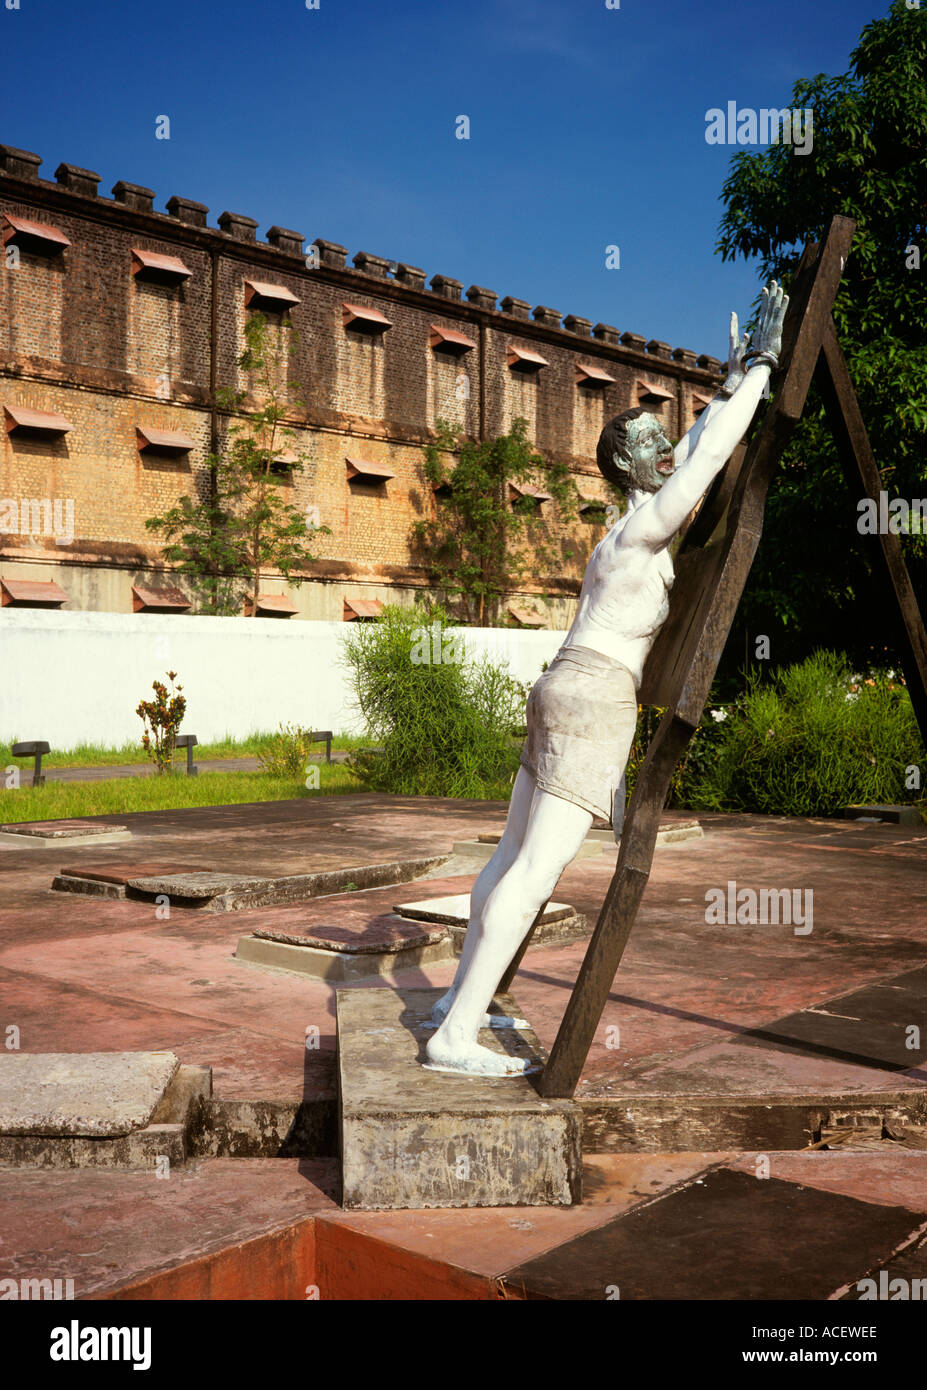 Indien-Andamanen Portblair whipping Post in Cellular Jail verwendet, um politische Gefangene von Briten Haus Stockfoto